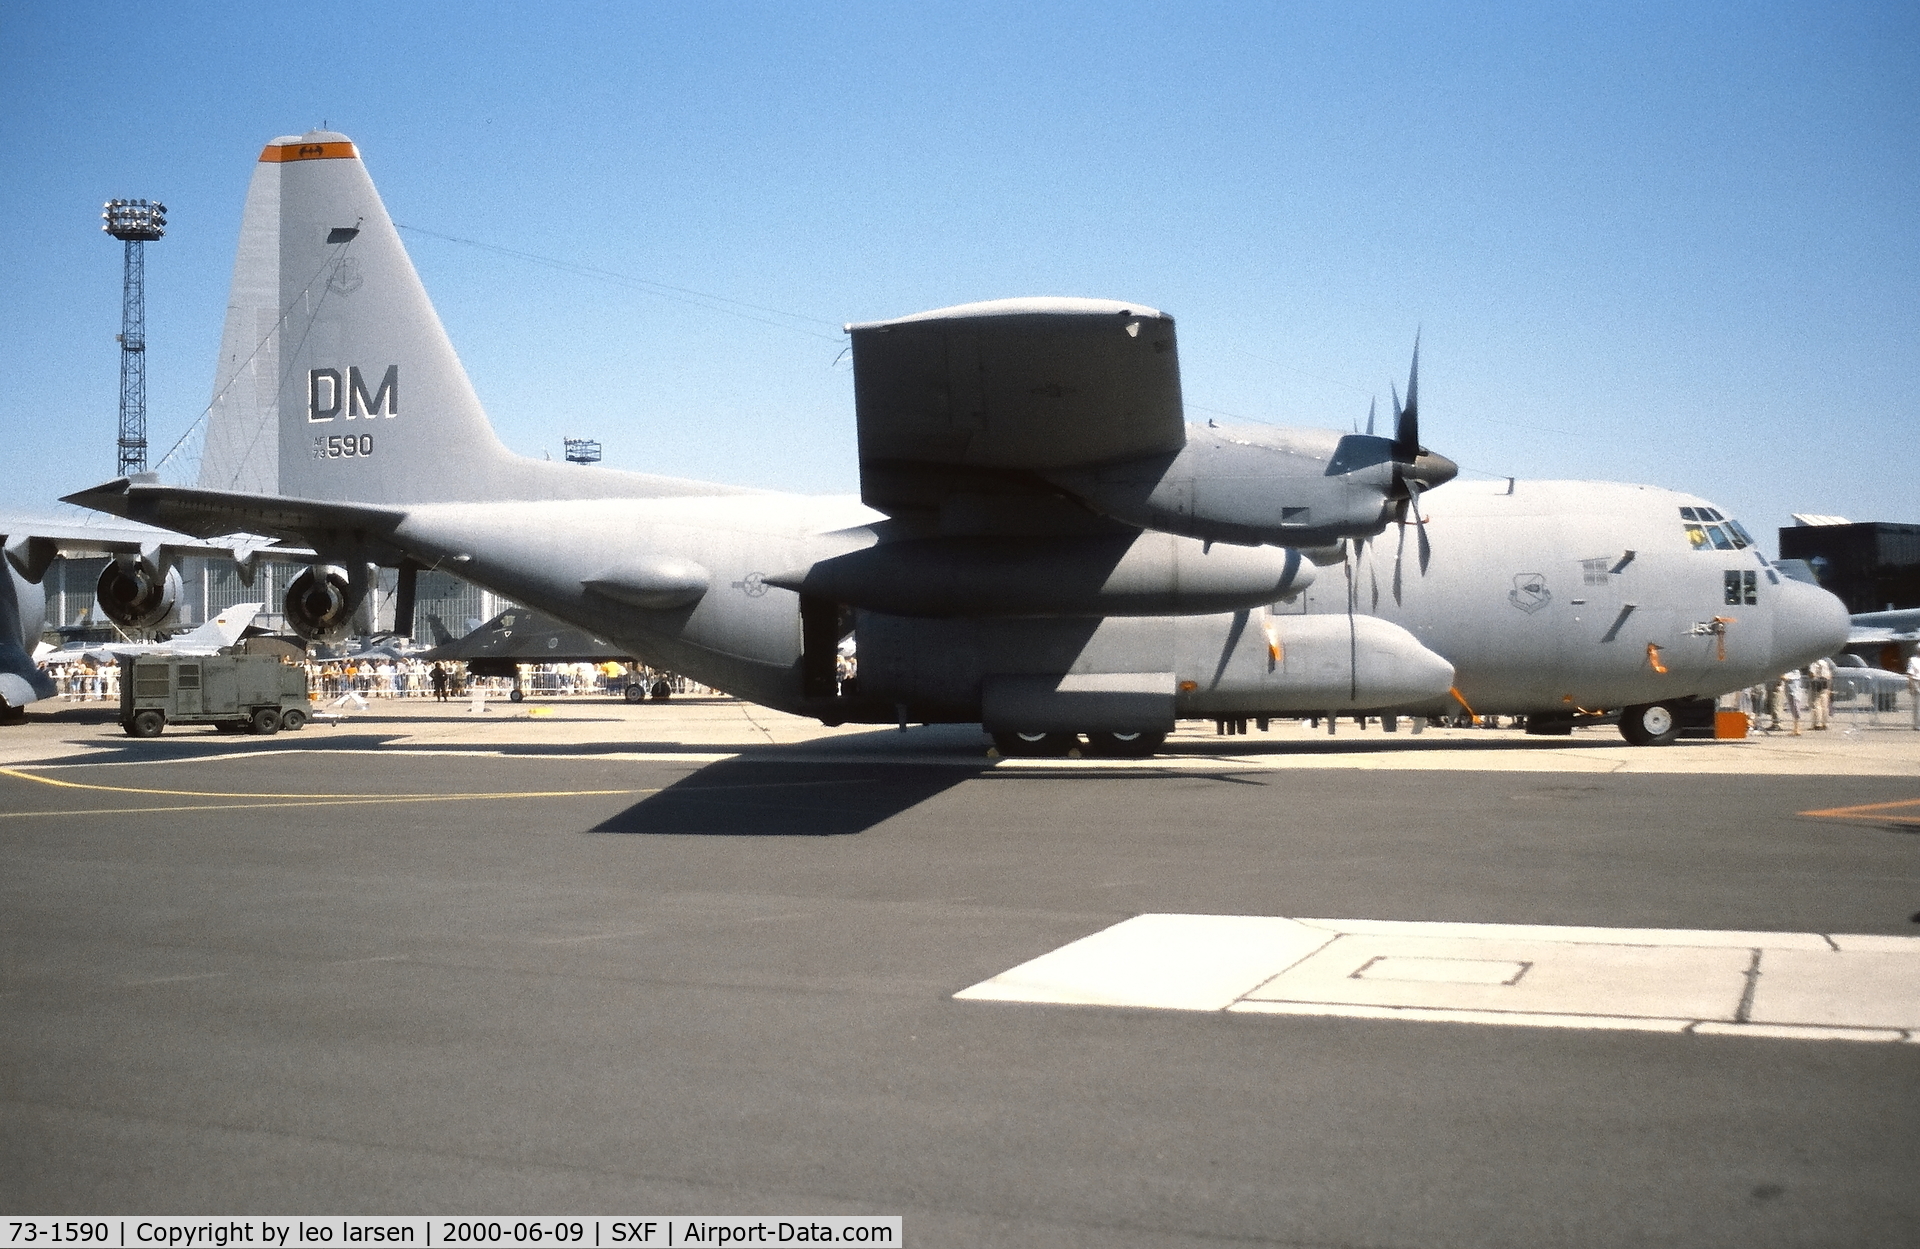 73-1590, 1973 Lockheed EC-130H Compass Call C/N 382-4554, Berlin Air Show 9.6.2000